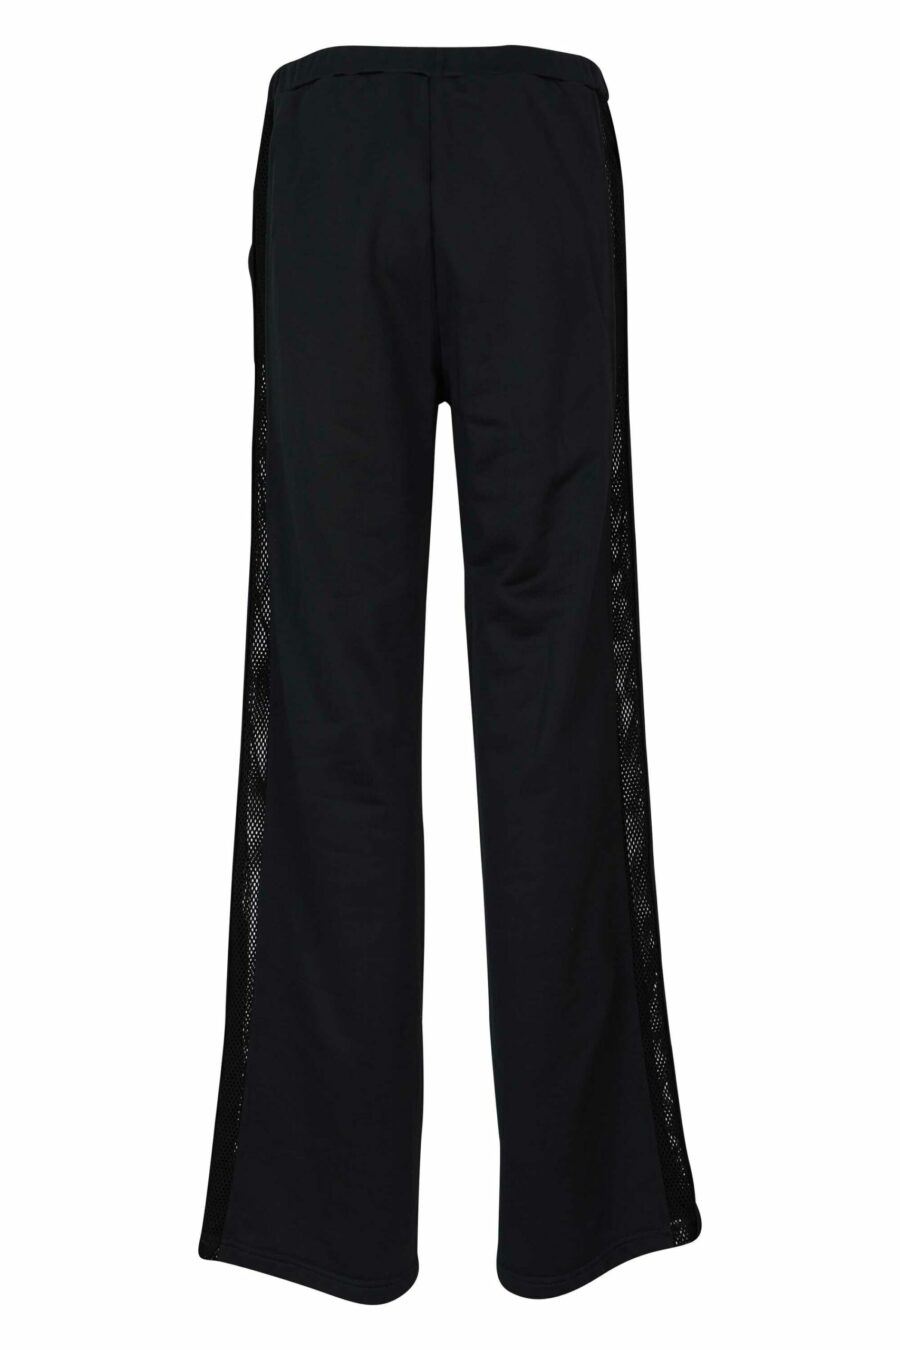 Pantalón negro ancho con logo - 8054148457945 scaled